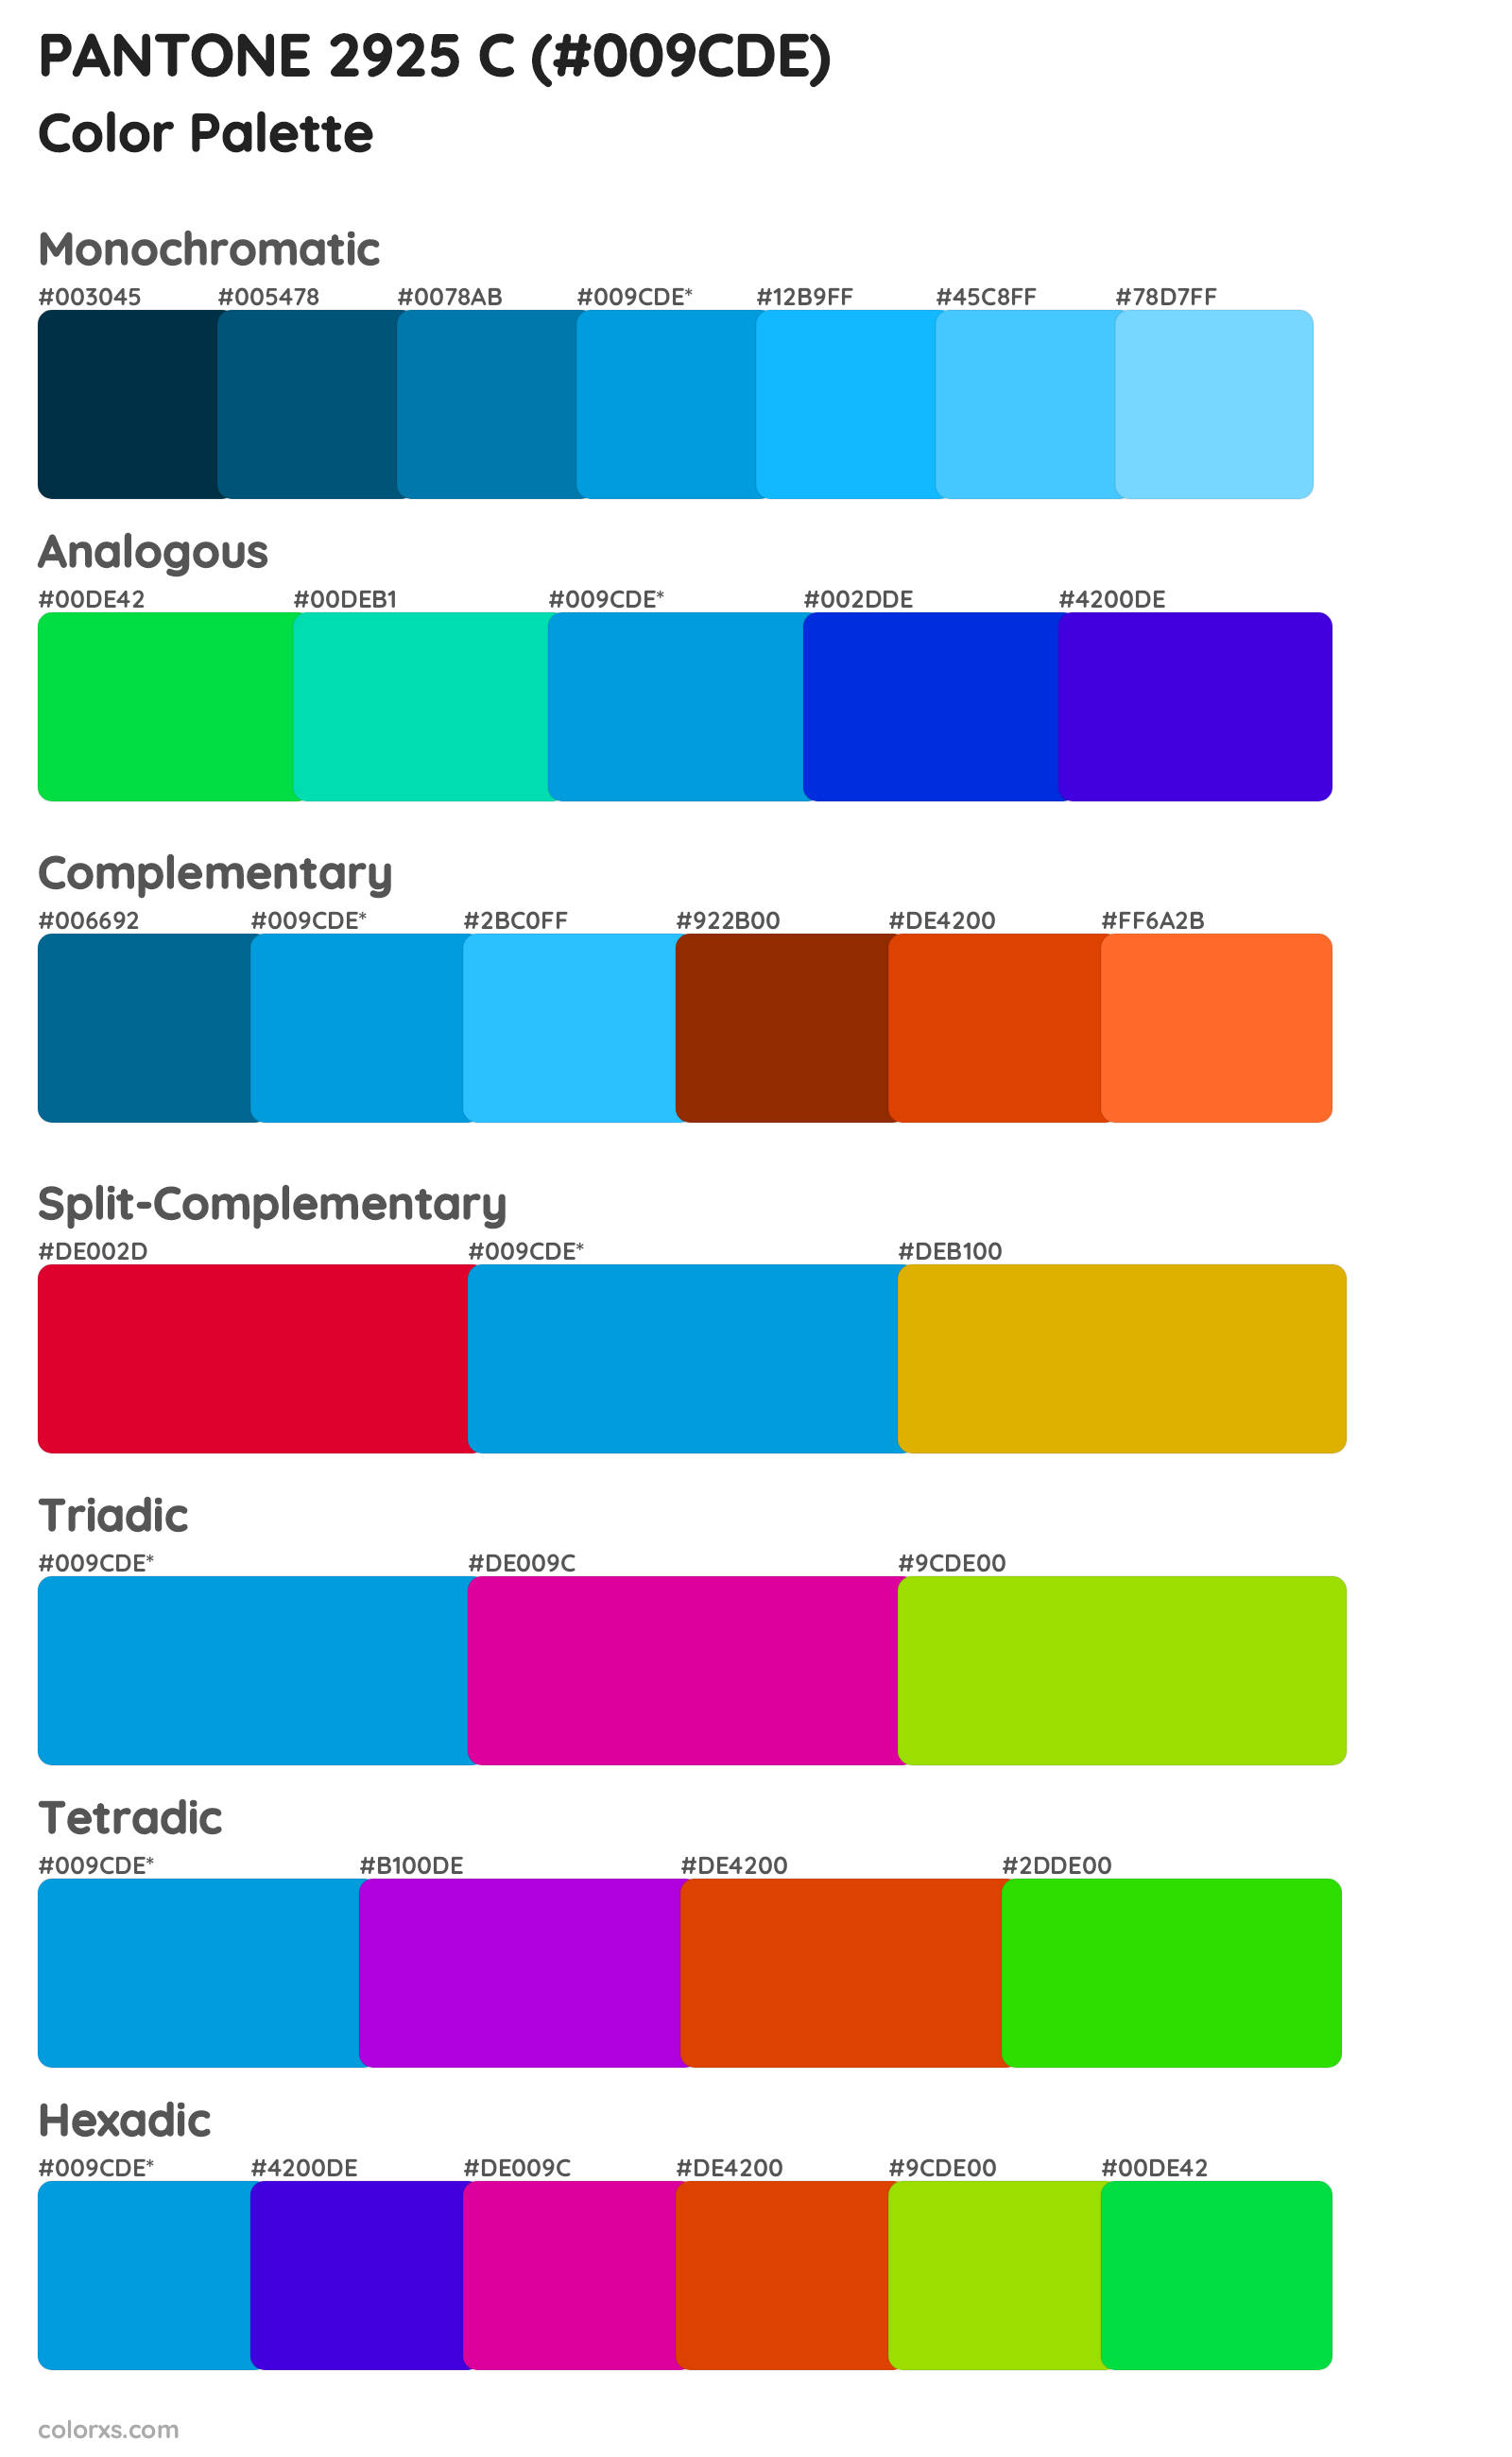 PANTONE 2925 C Color Scheme Palettes